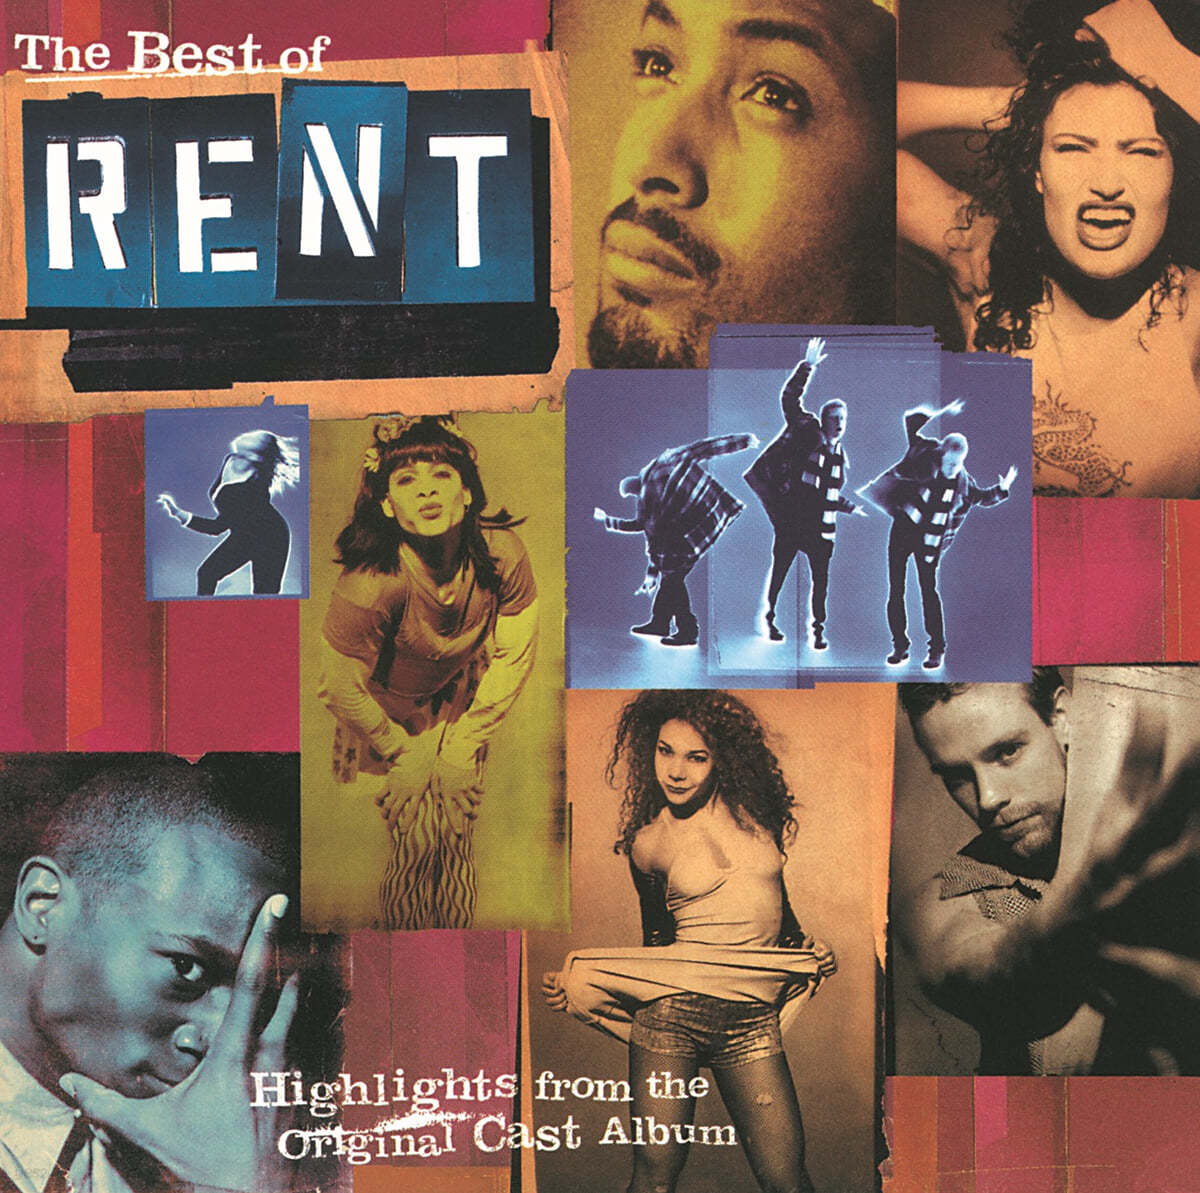 뮤지컬 ‘렌트’ 오리지널 캐스트 레코딩 베스트 앨범 (The Best of Rent: Highlights from the Original Cast Album)